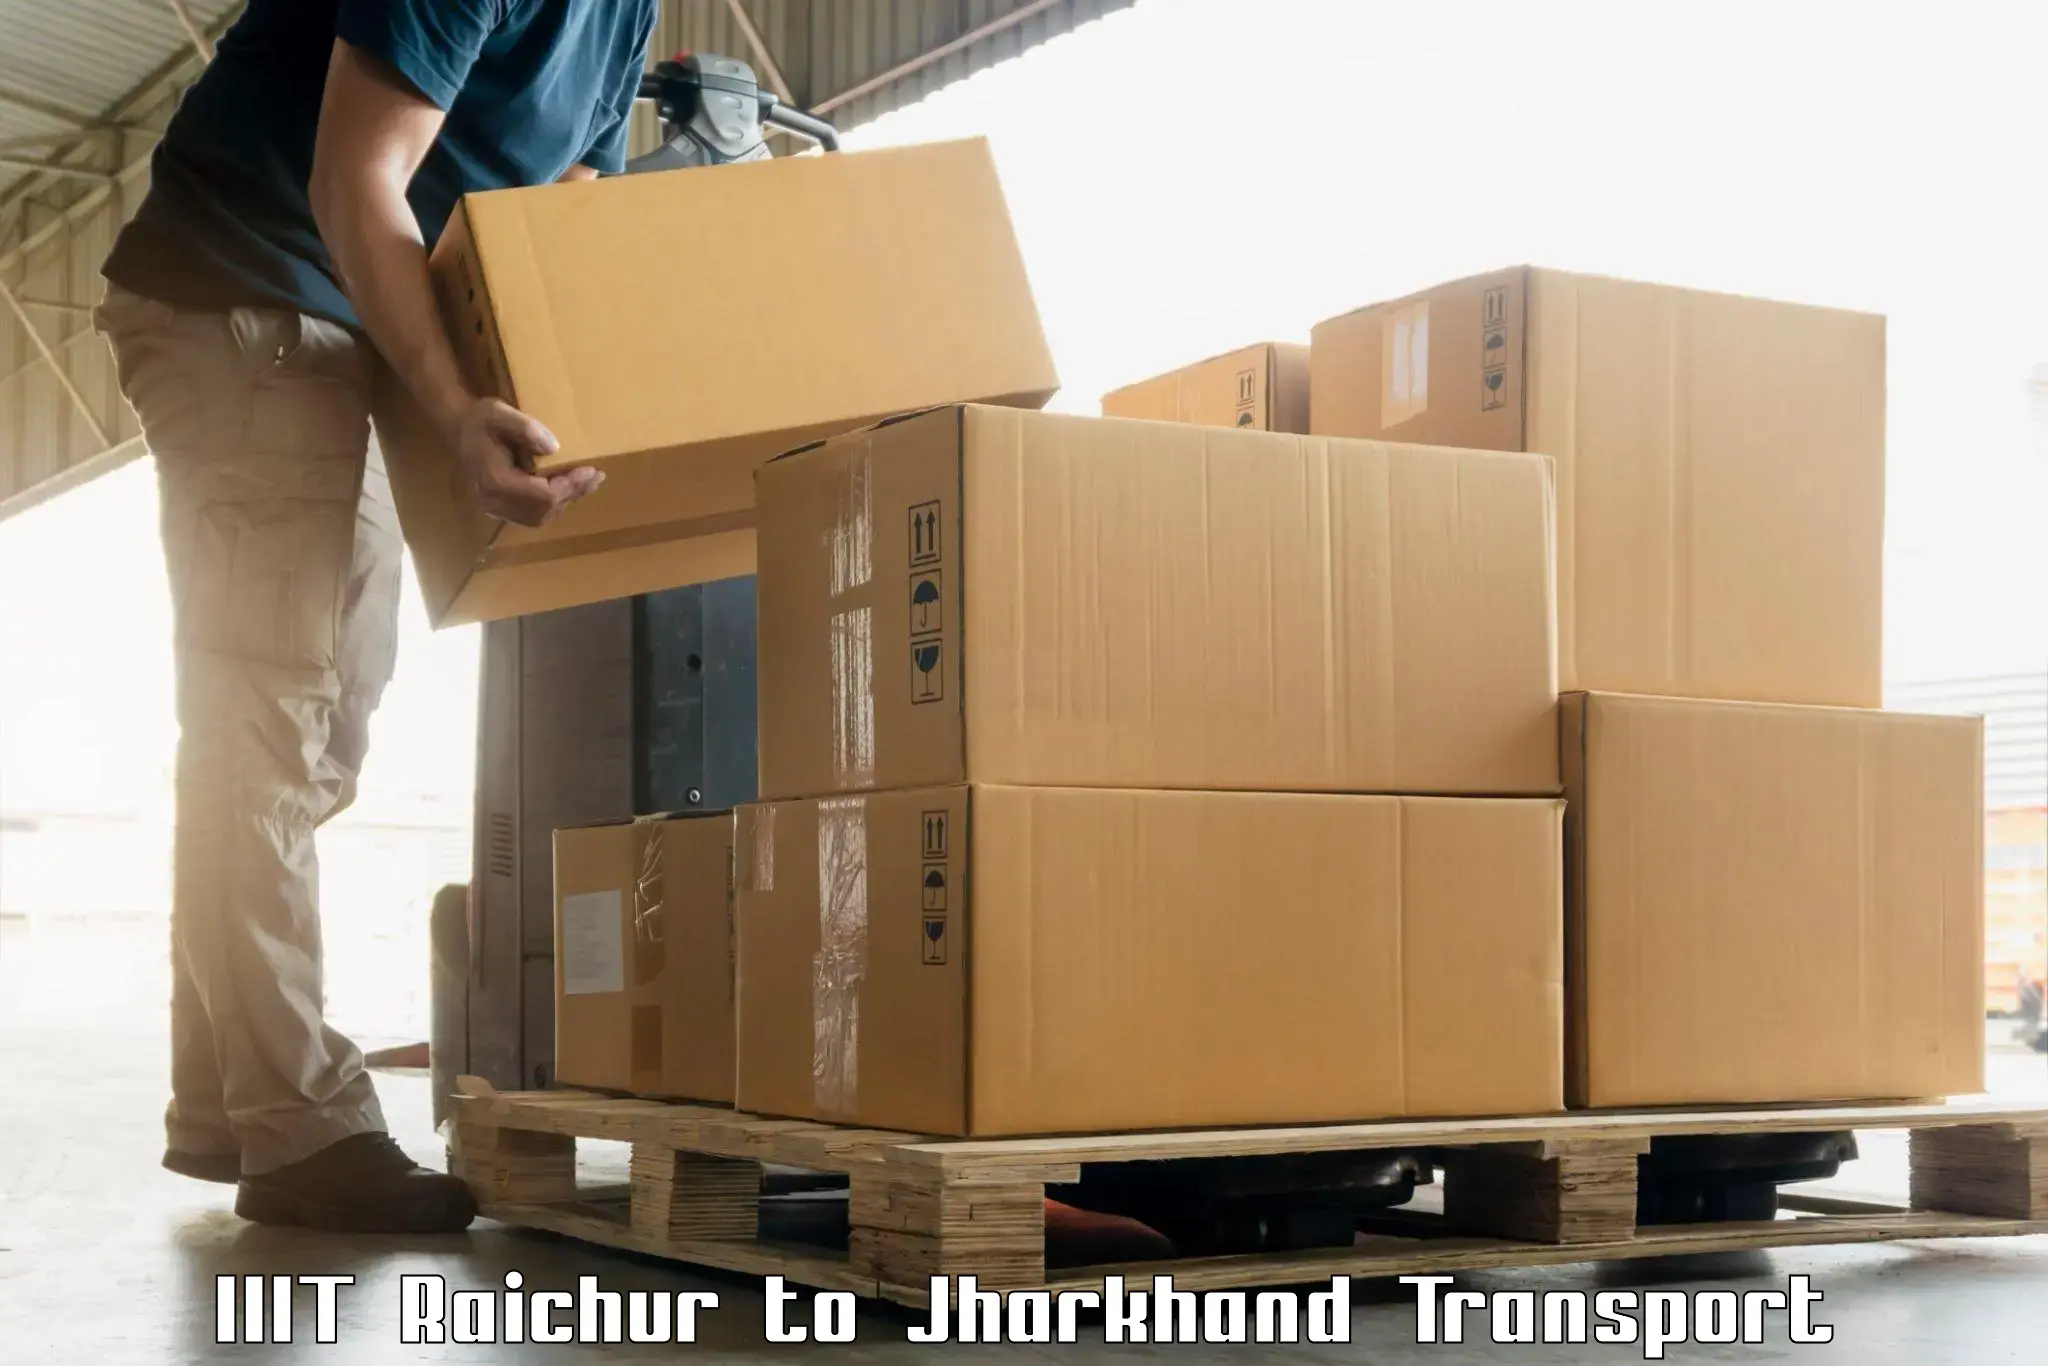 Container transport service IIIT Raichur to Bara Boarijor